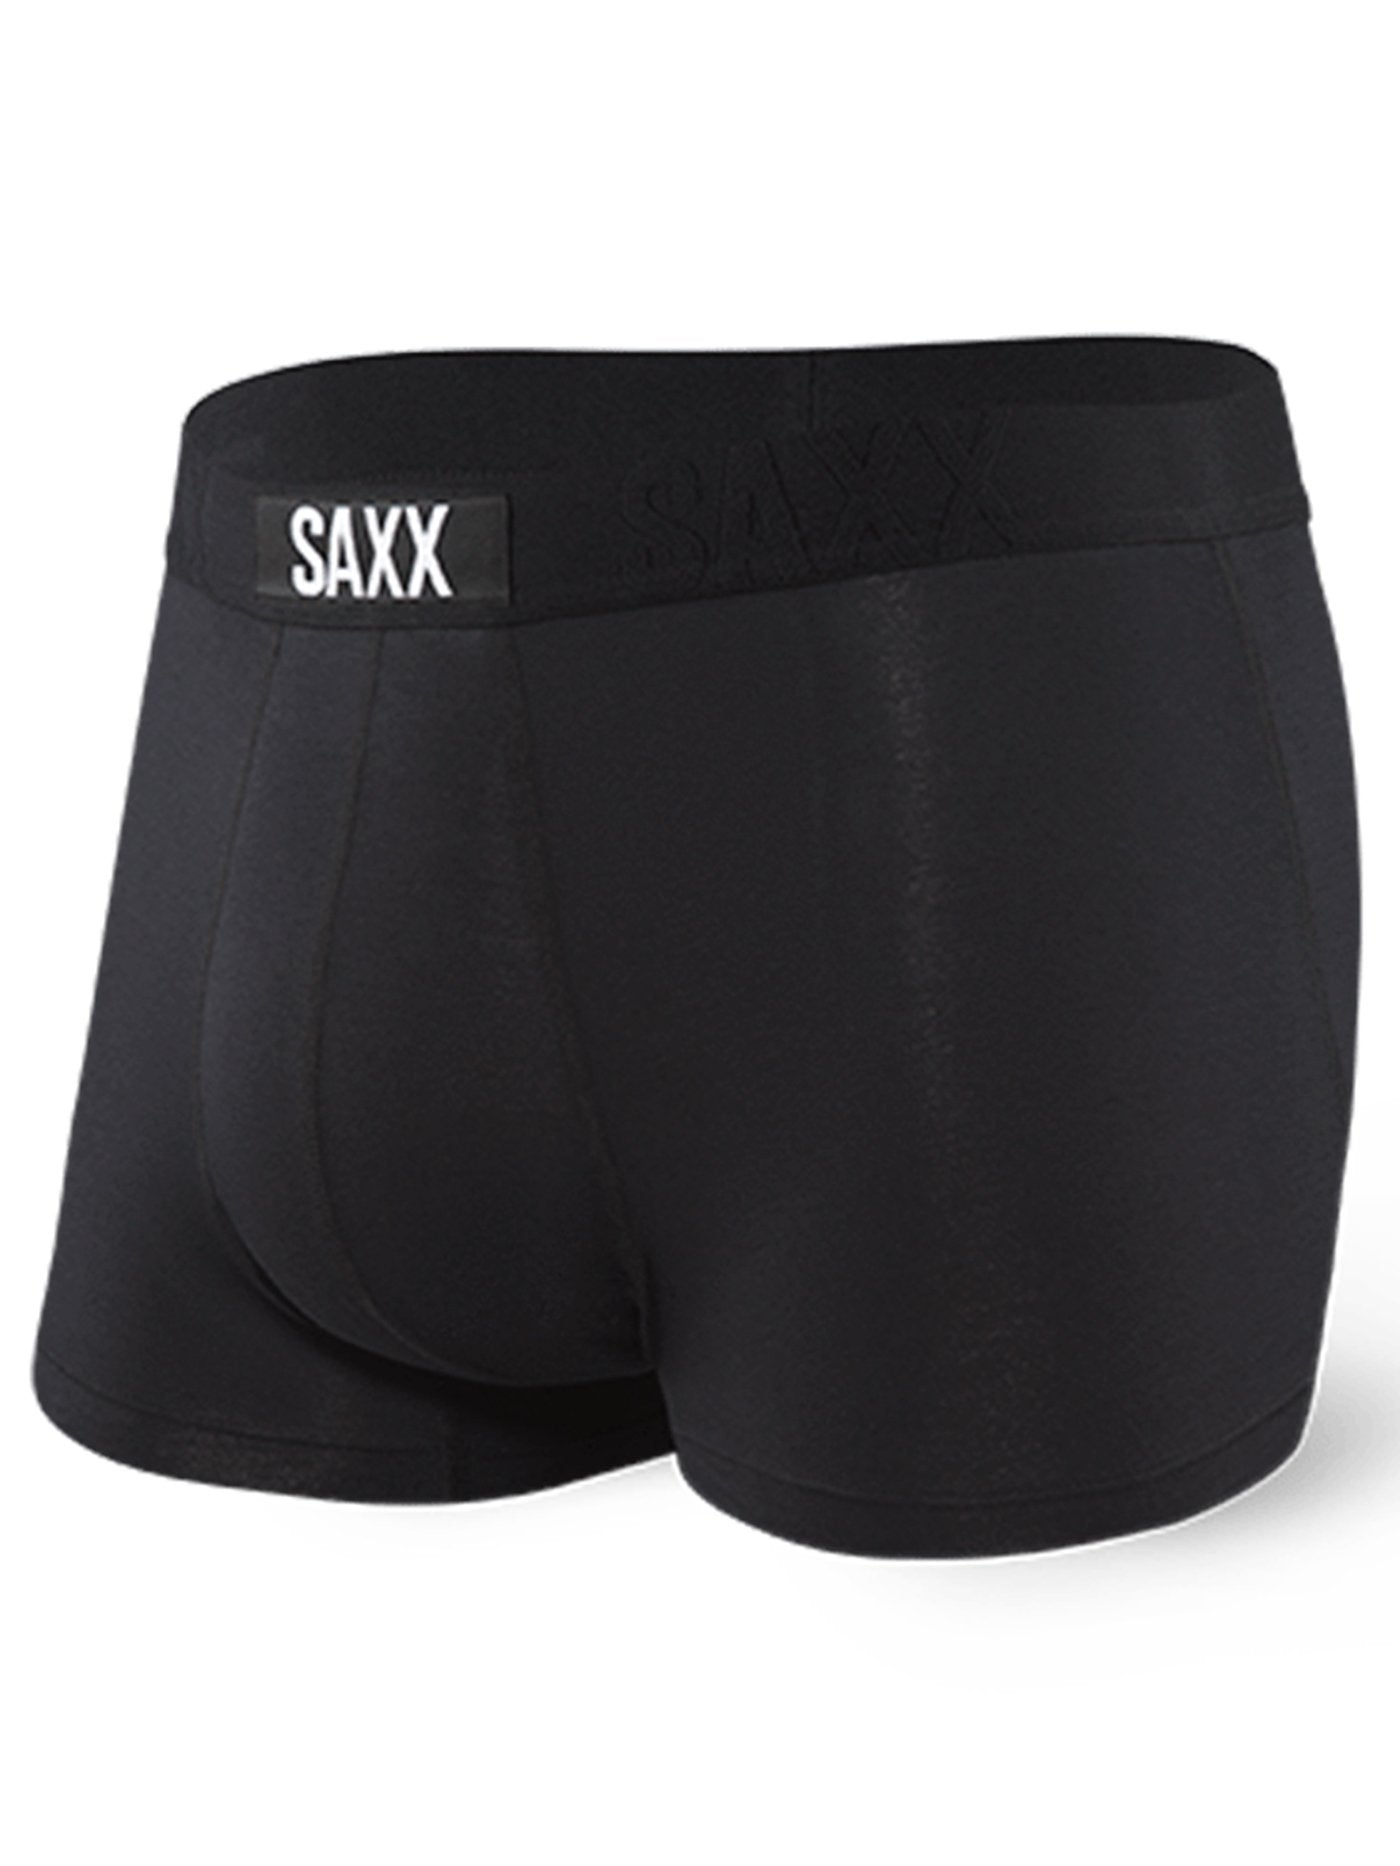 Saxx Underwear Vibe Trunk Slim BBK